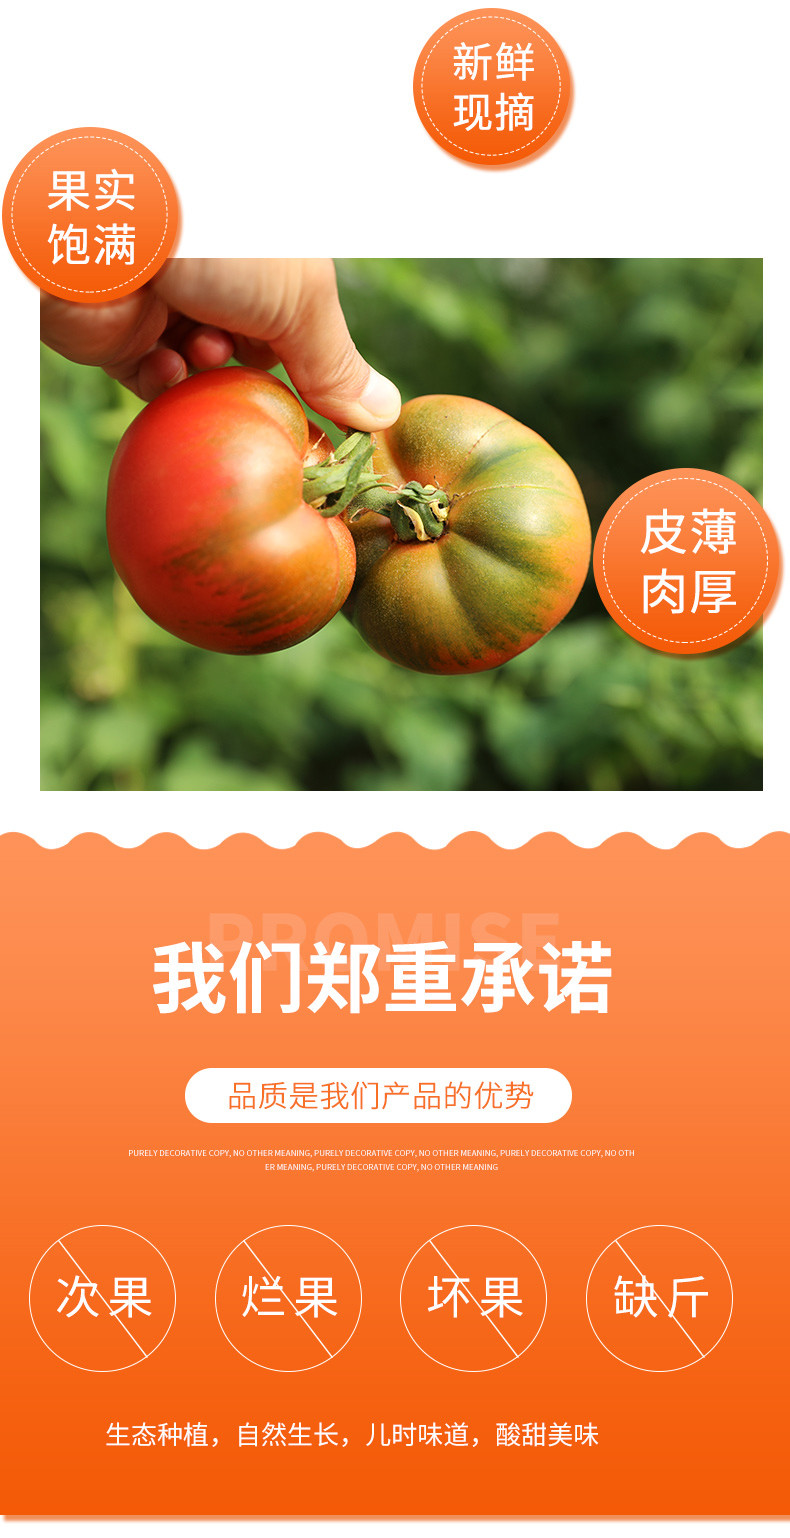  【北京优农】密之蓝天密云本地超级精彩番茄  邮政农品